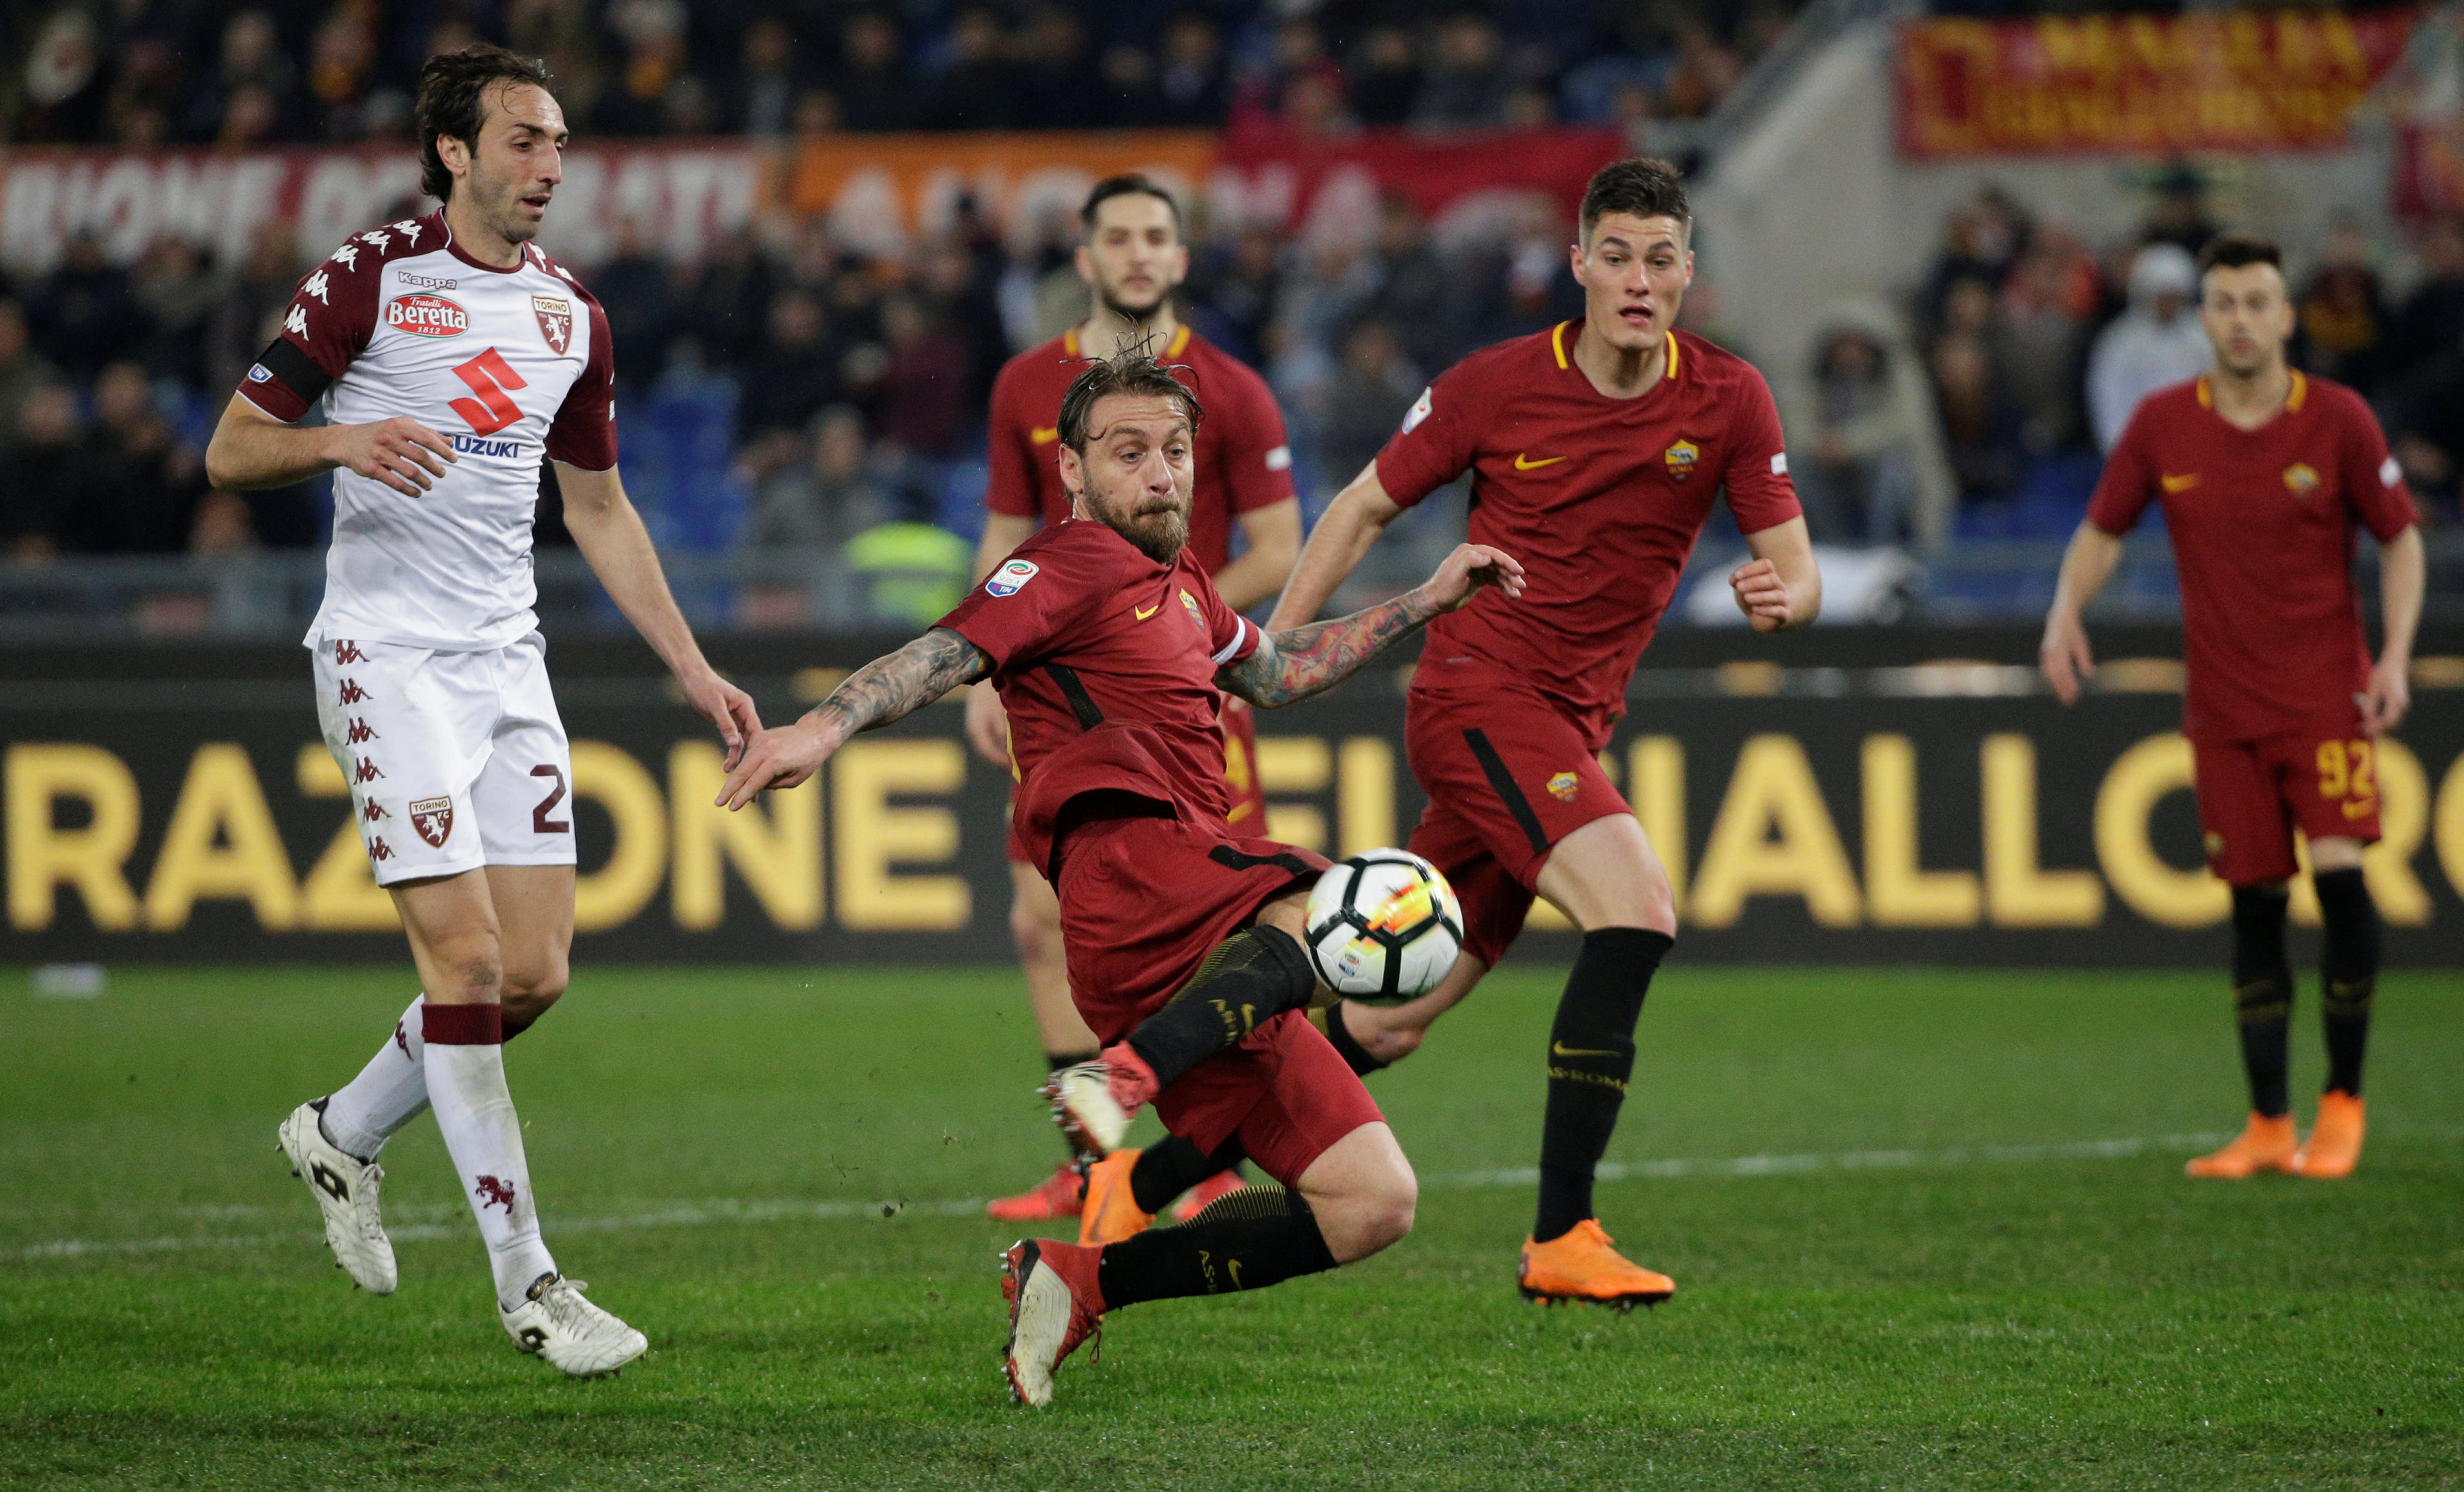 Pha lao người dứt điểm nâng tỉ số lên 2-0 cho Roma của De Rossi. Ảnh: REUTERS